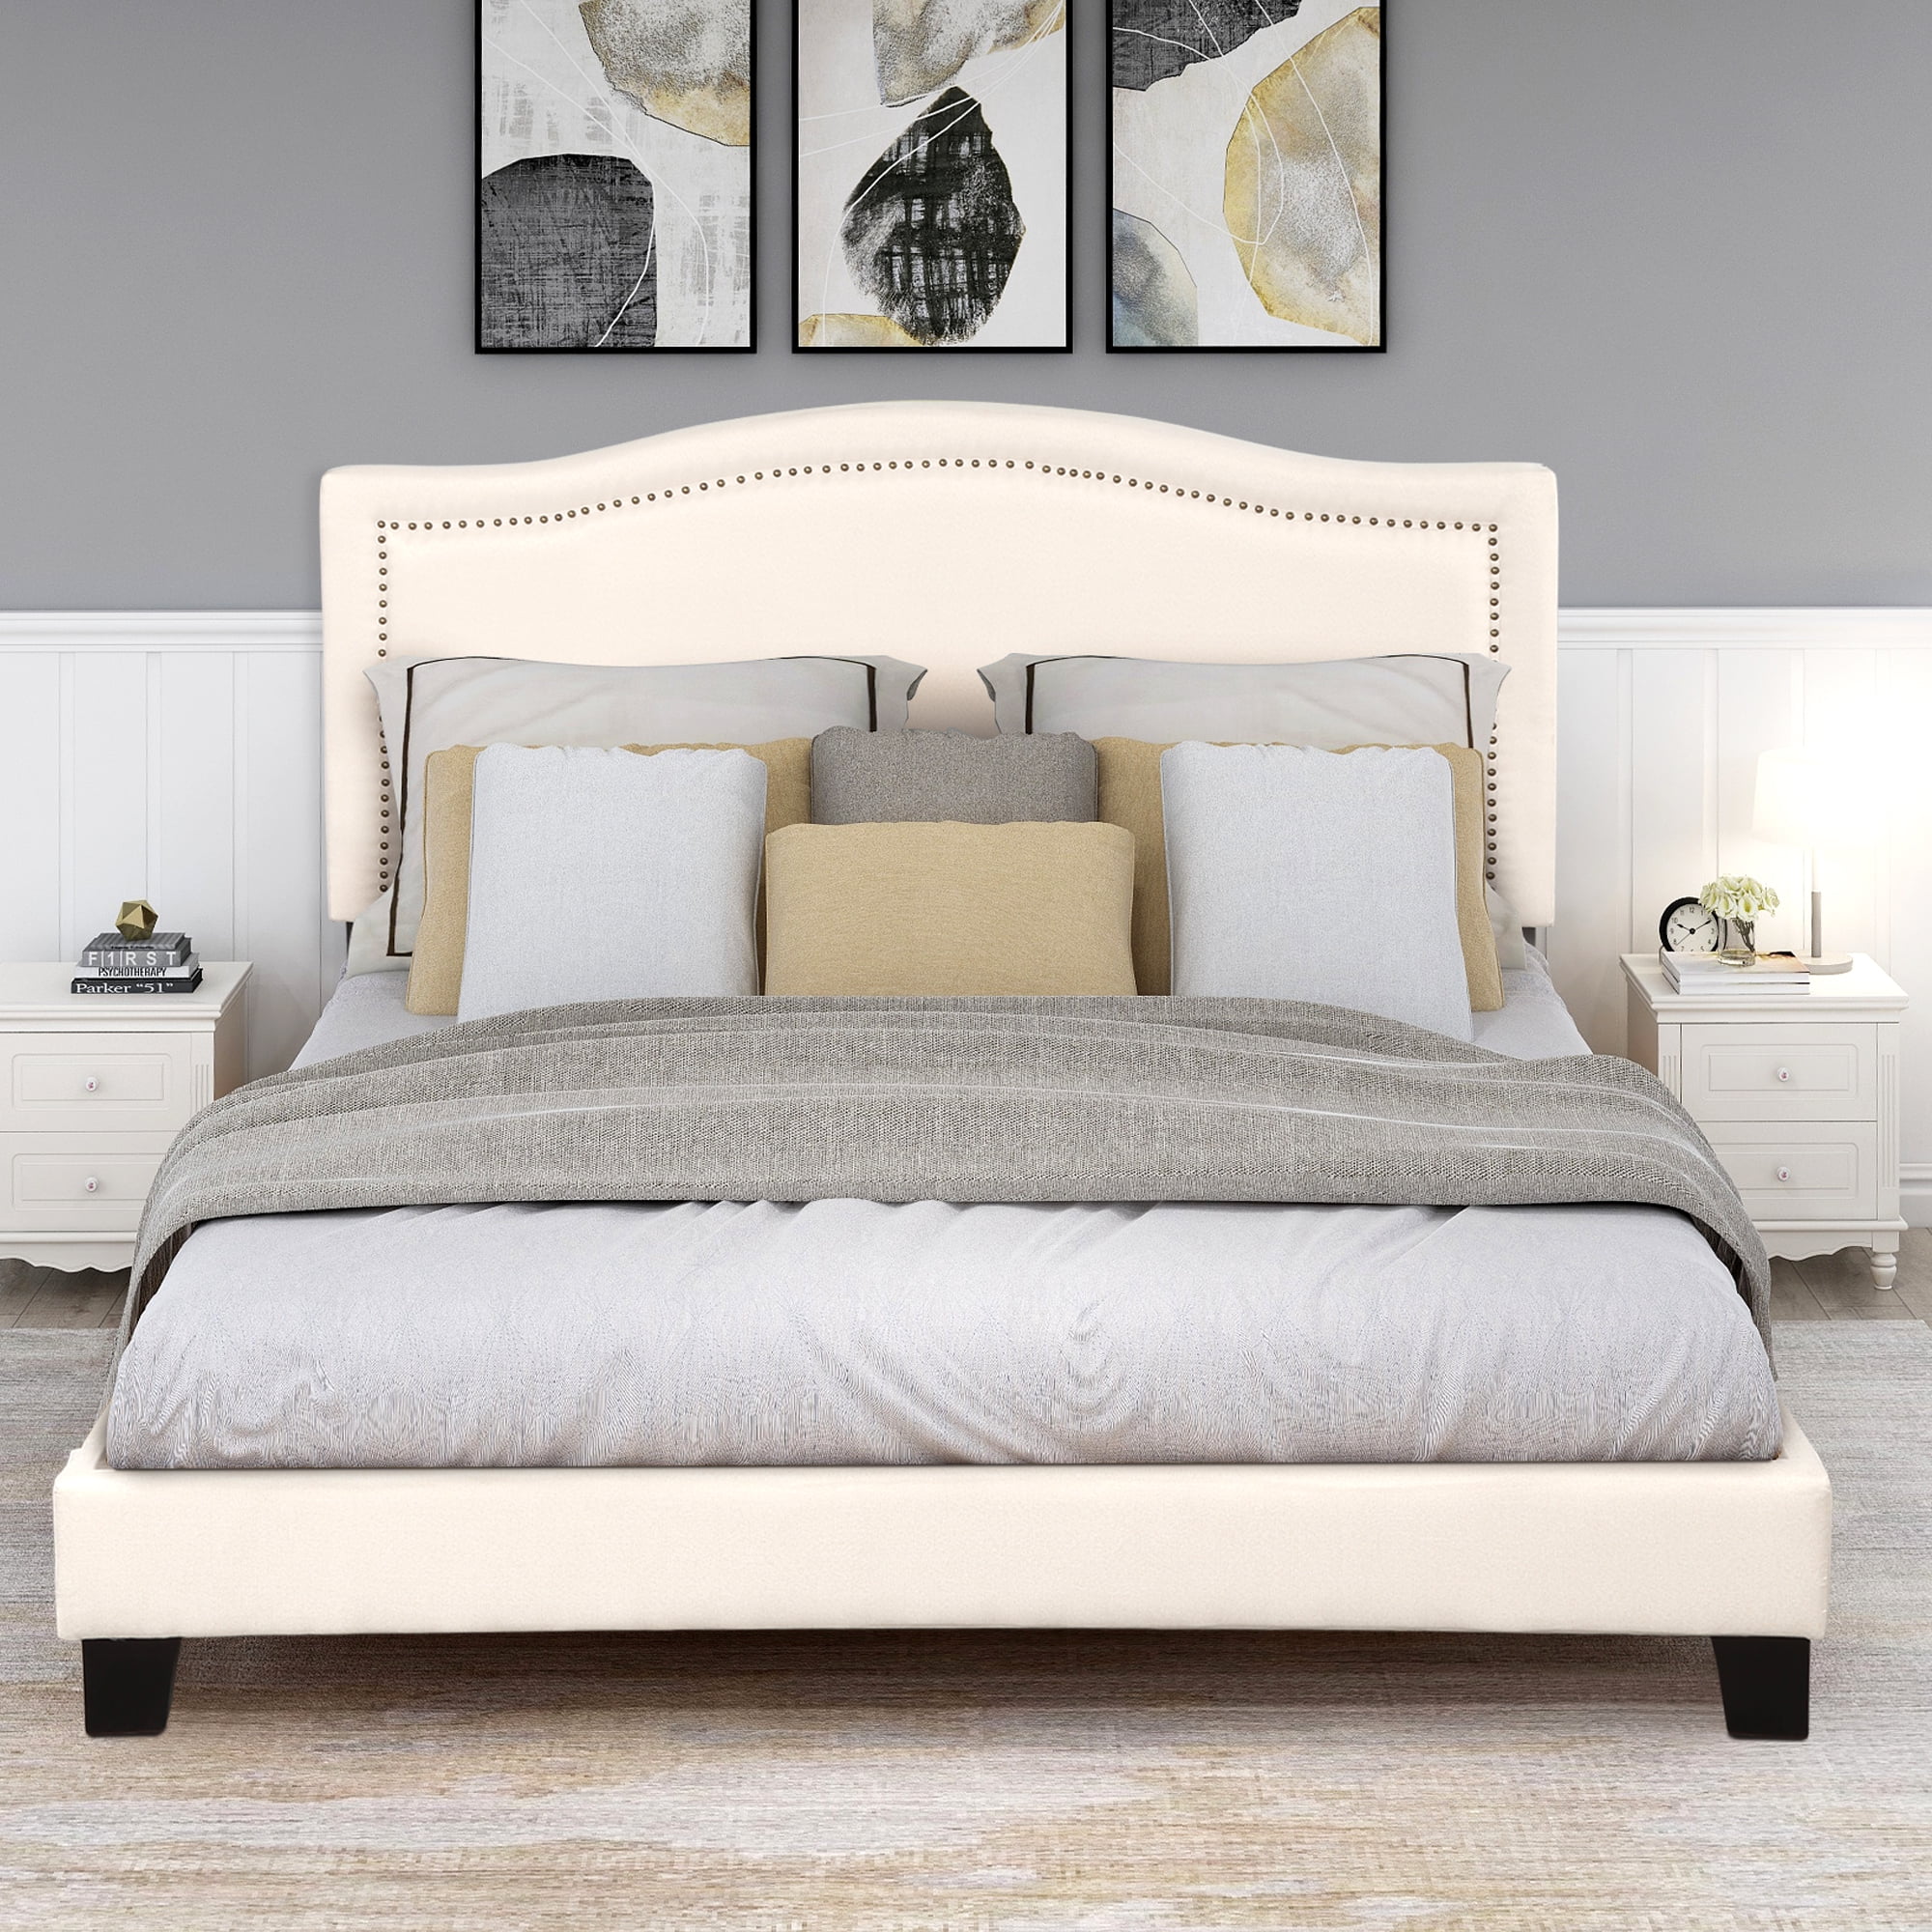 Queen Size Platform Bed Frame, Upholstered Linen Bed Frame w/Headboard